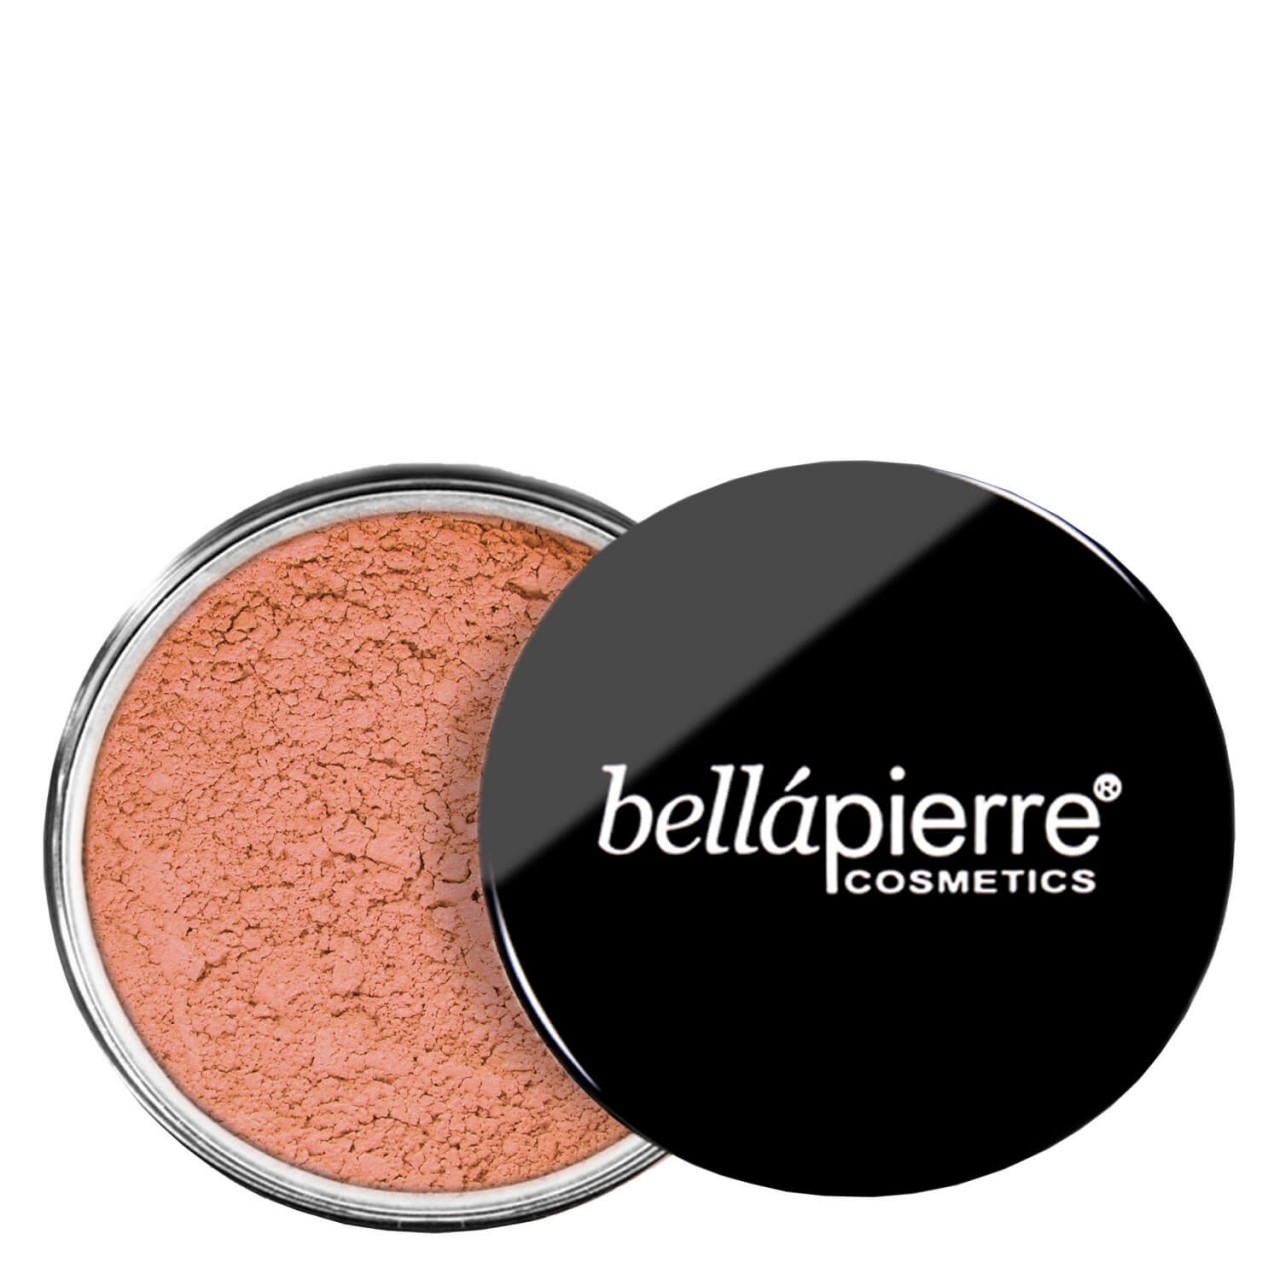 bellapierre Teint - Mineral Blush Autumn Glow von bellapierre